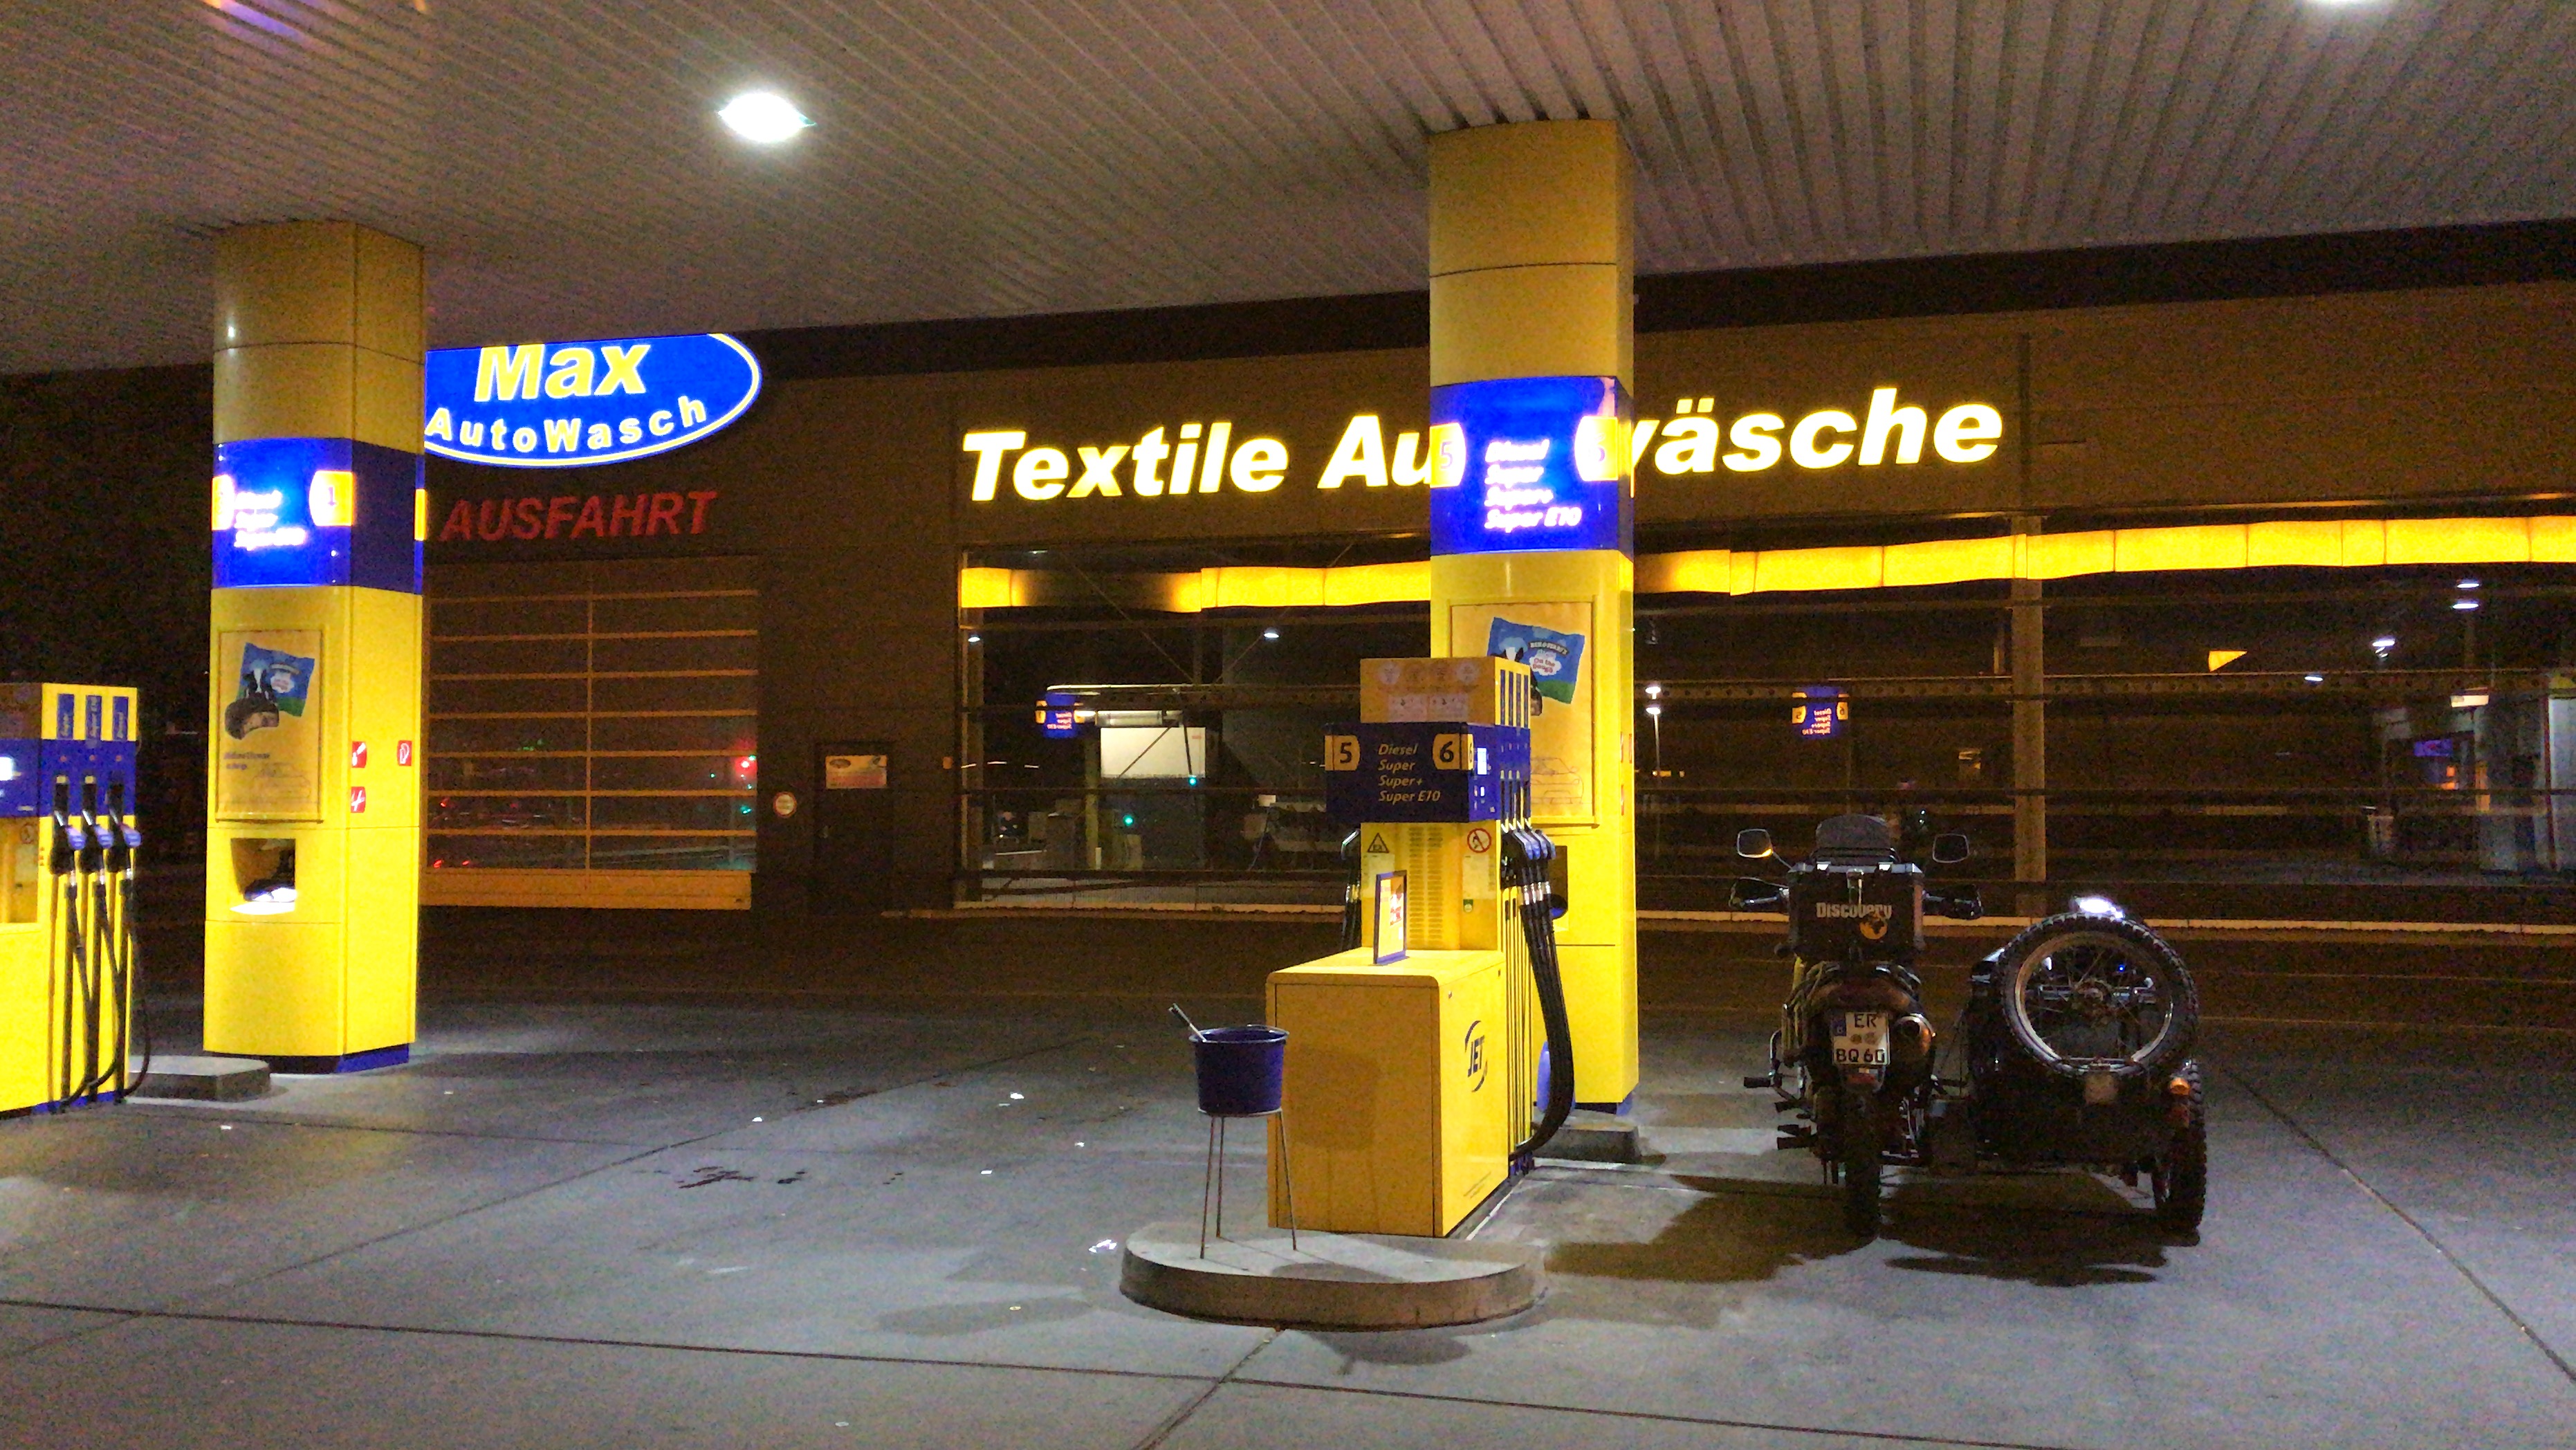 Einsame Tankstelle bei Nacht - ich habe erwartet, dass gleich so ein Tumbleweed-Wüstenstrauch durch's Bild rollt.